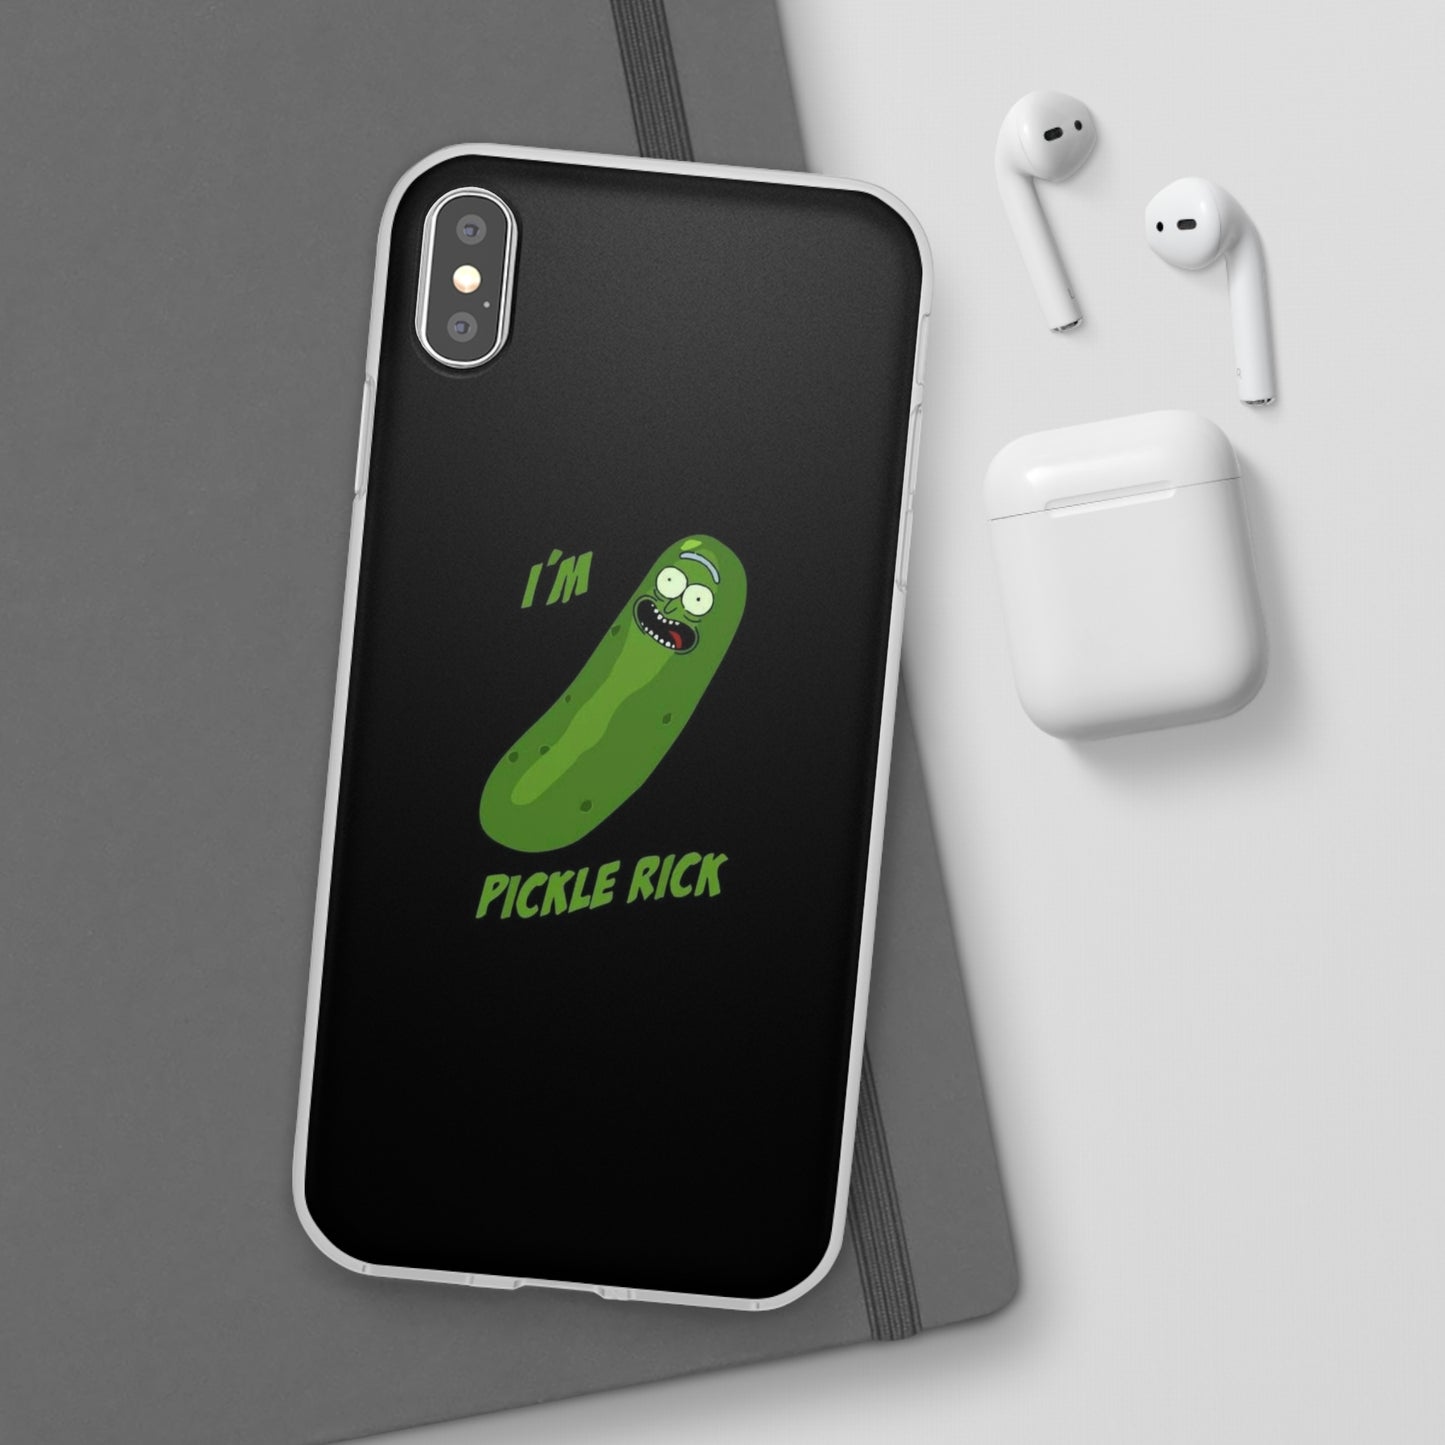 I’m Pickle Rick Phone Case